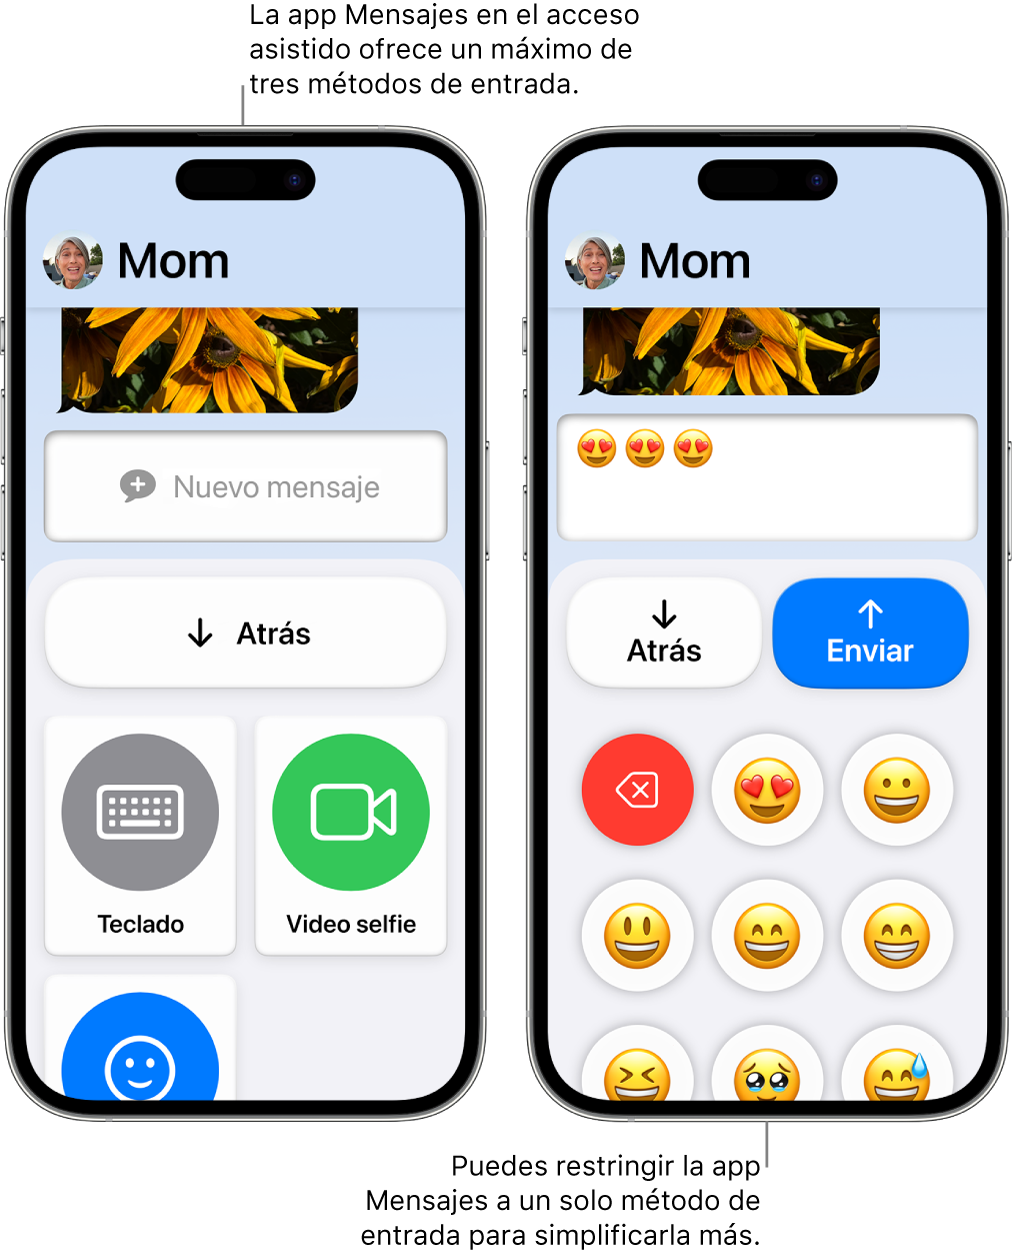 Dos iPhone en el modo de acceso asistido. Un iPhone muestra la app Mensajes con los métodos de entrada que puede elegir el usuario, como Teclado o Video selfie. El otro muestra un mensaje que se envía usando un teclado que sólo tiene emojis.